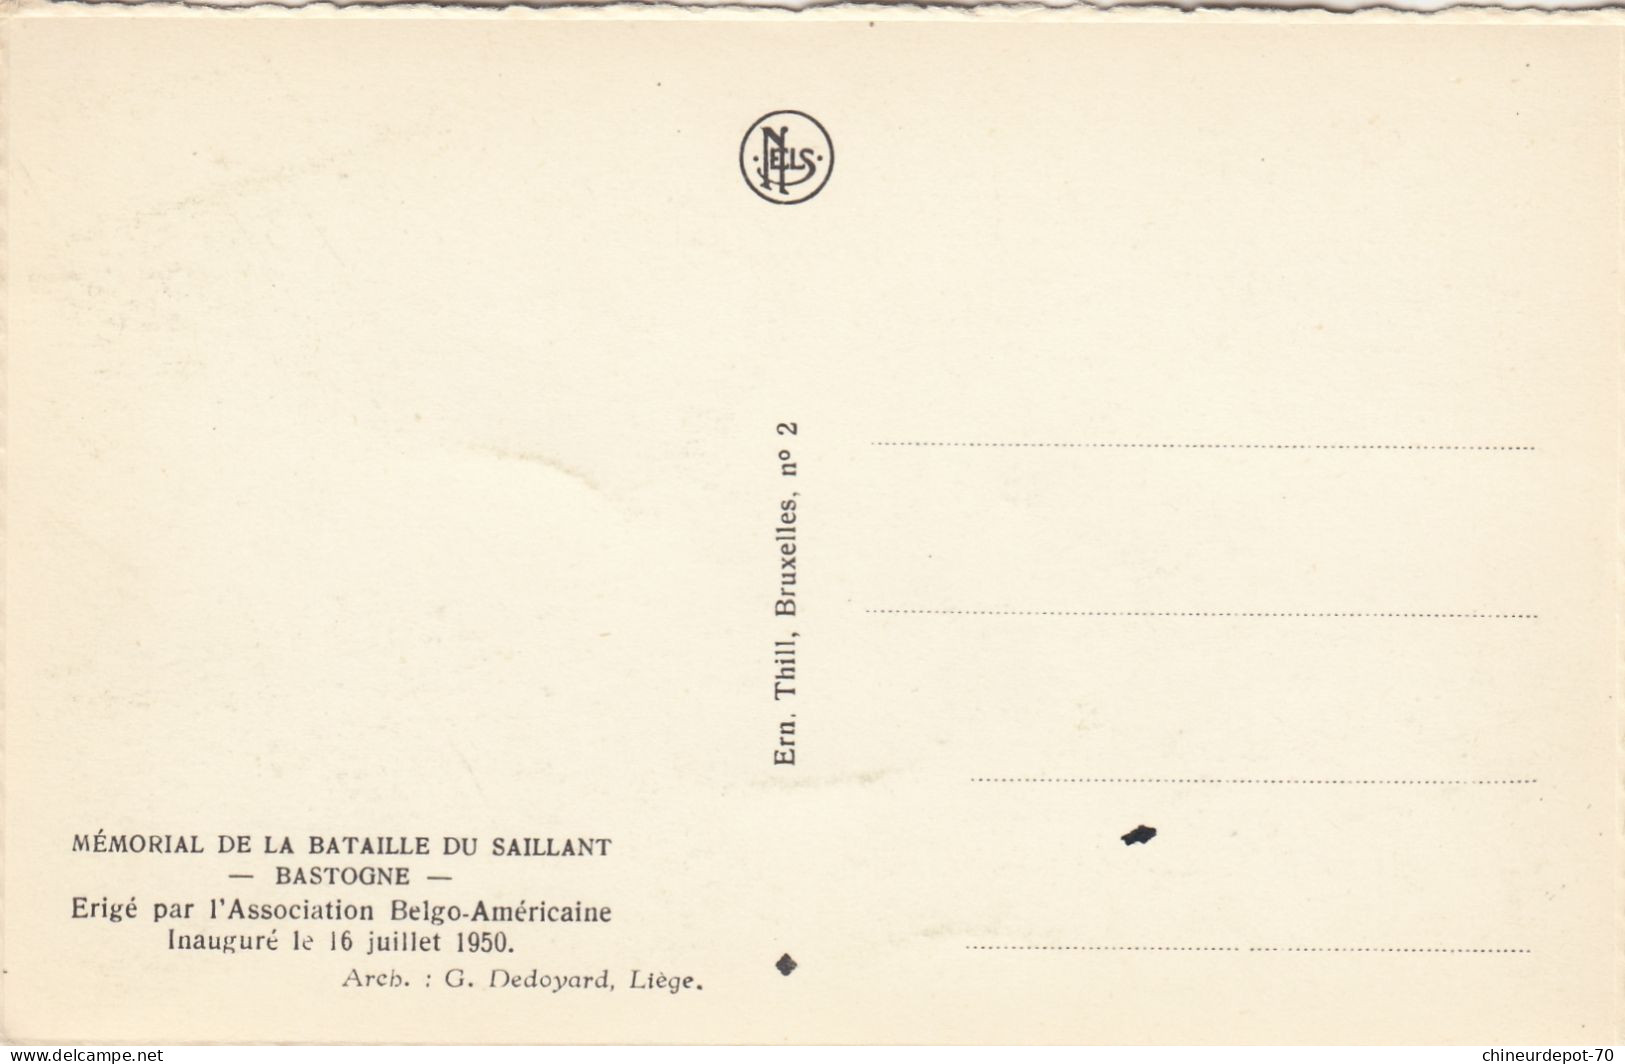 BASTOGNE   MEMORIAL DE LA BATAILLE DU SAILLANT INAUGURE LE 16.7.1950 - Bastogne